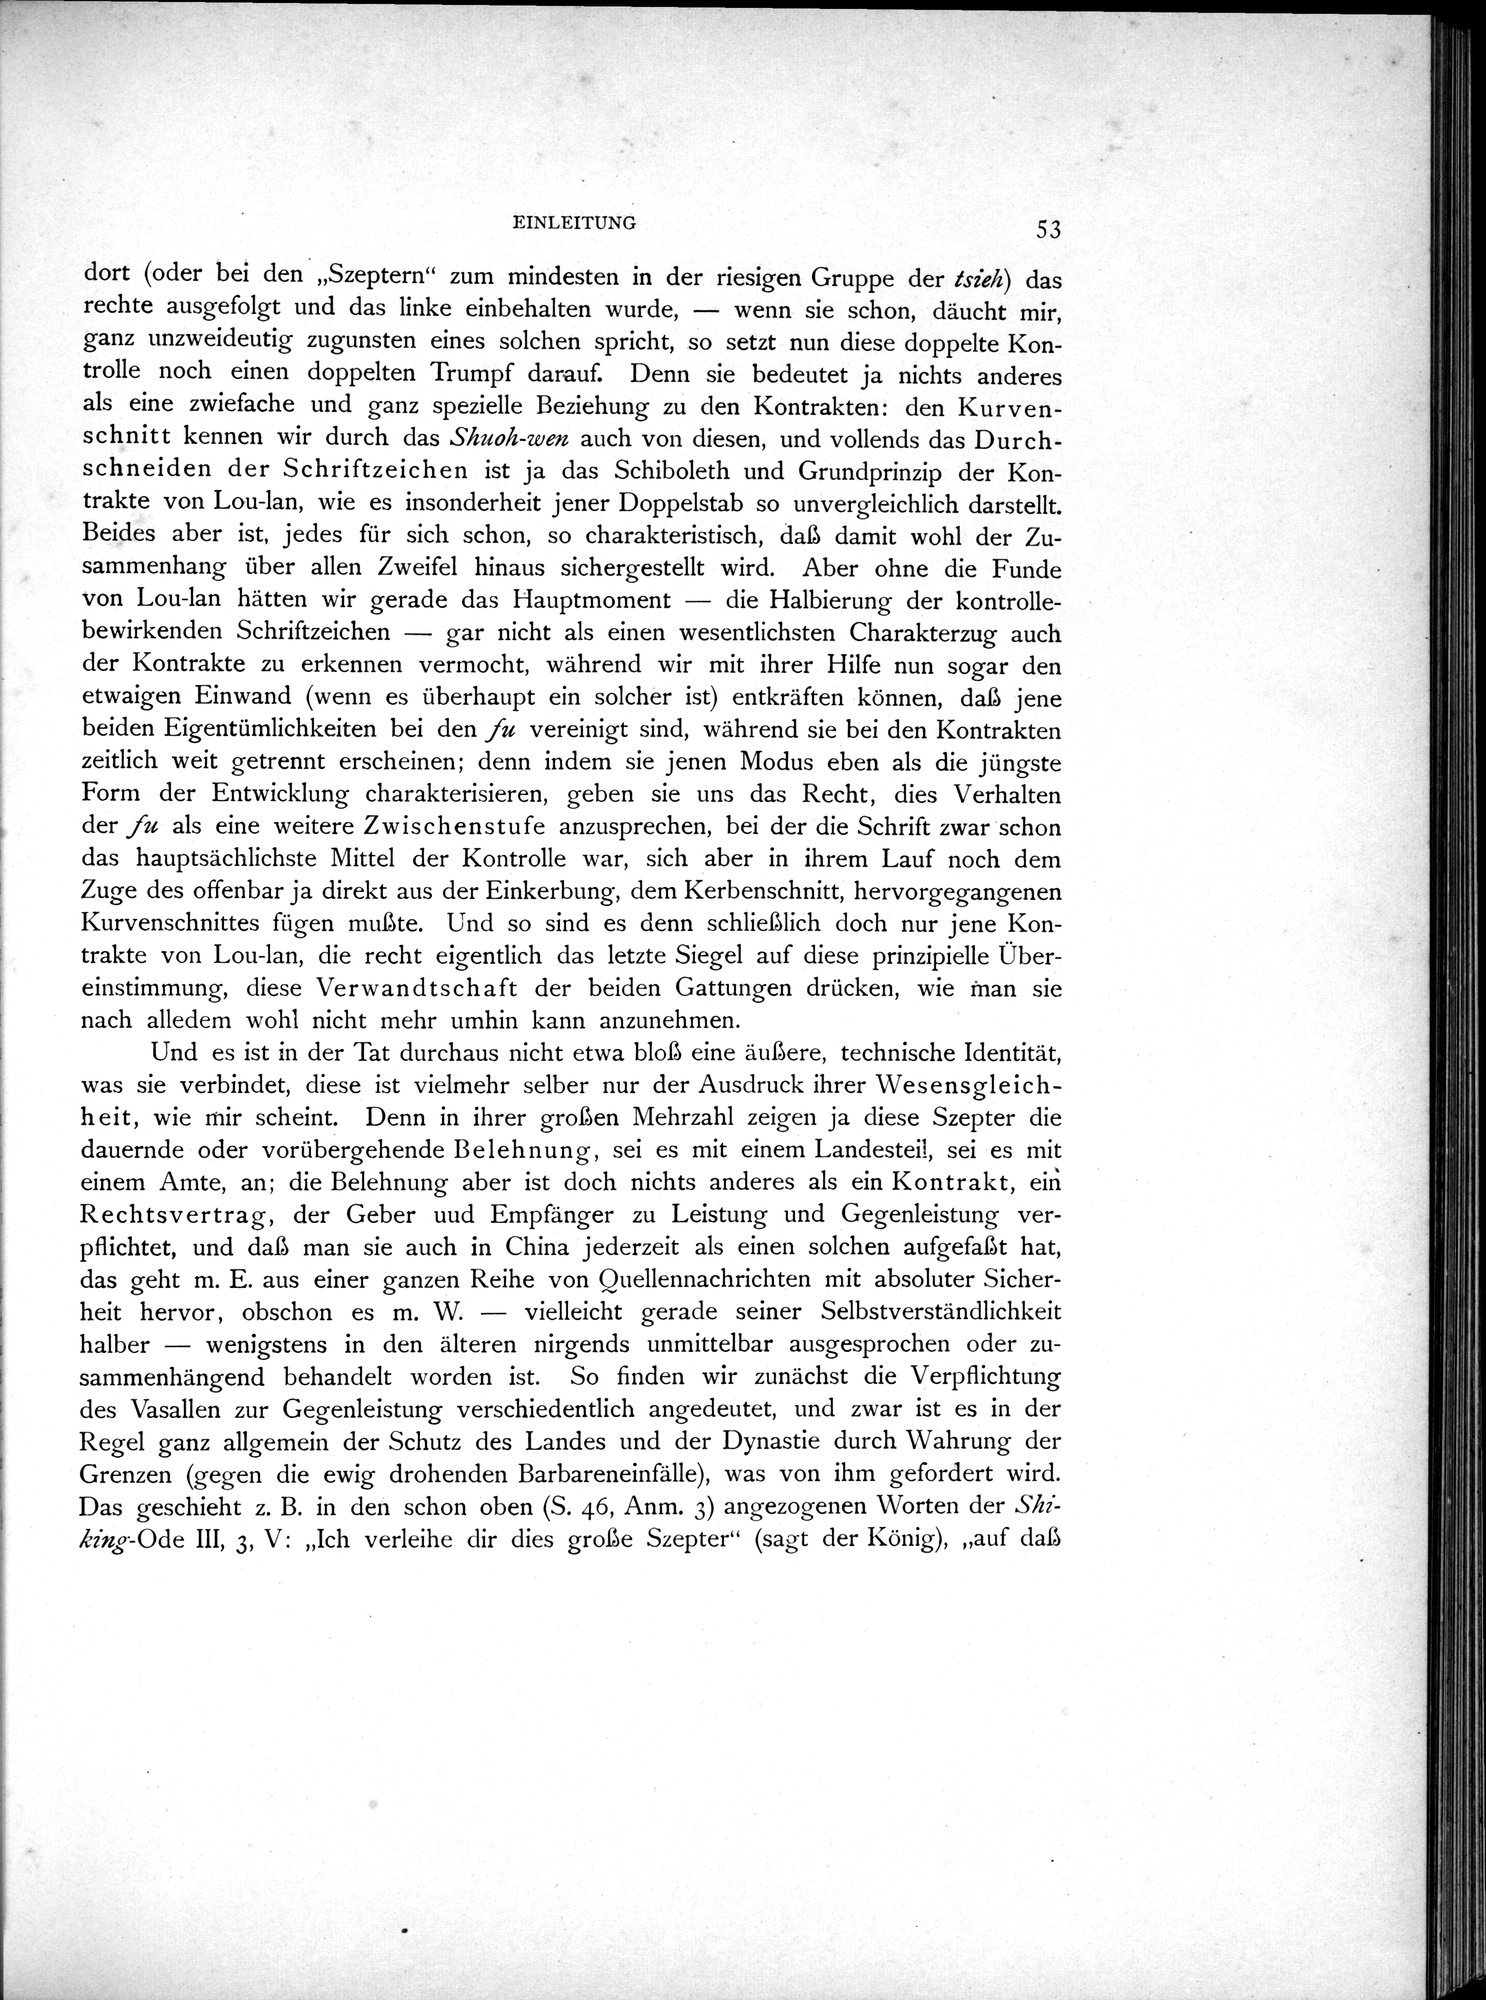 Die Chinesischen Handschriften- und sonstigen Kleinfunde Sven Hedins in Lou-lan : vol.1 / Page 77 (Grayscale High Resolution Image)